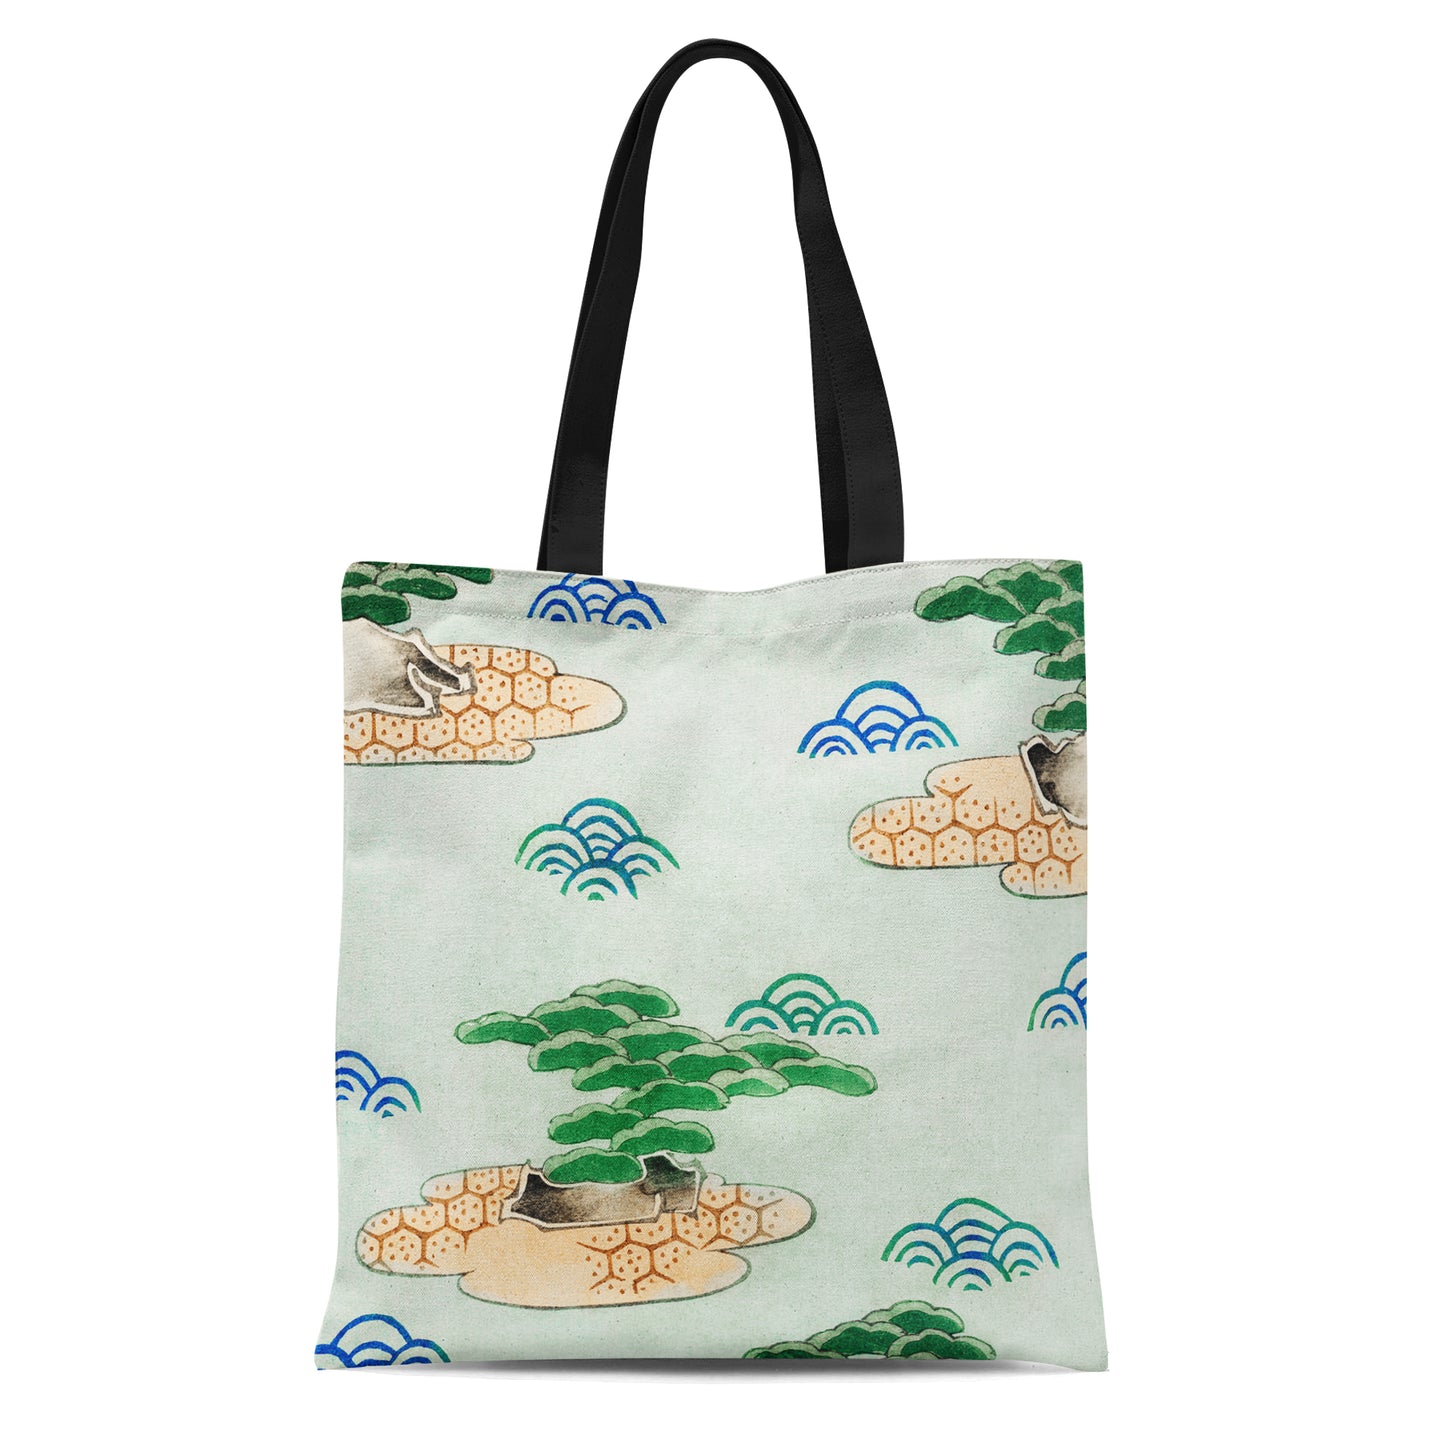 Kacho-ga Tote Bag - Japanese woodblock print